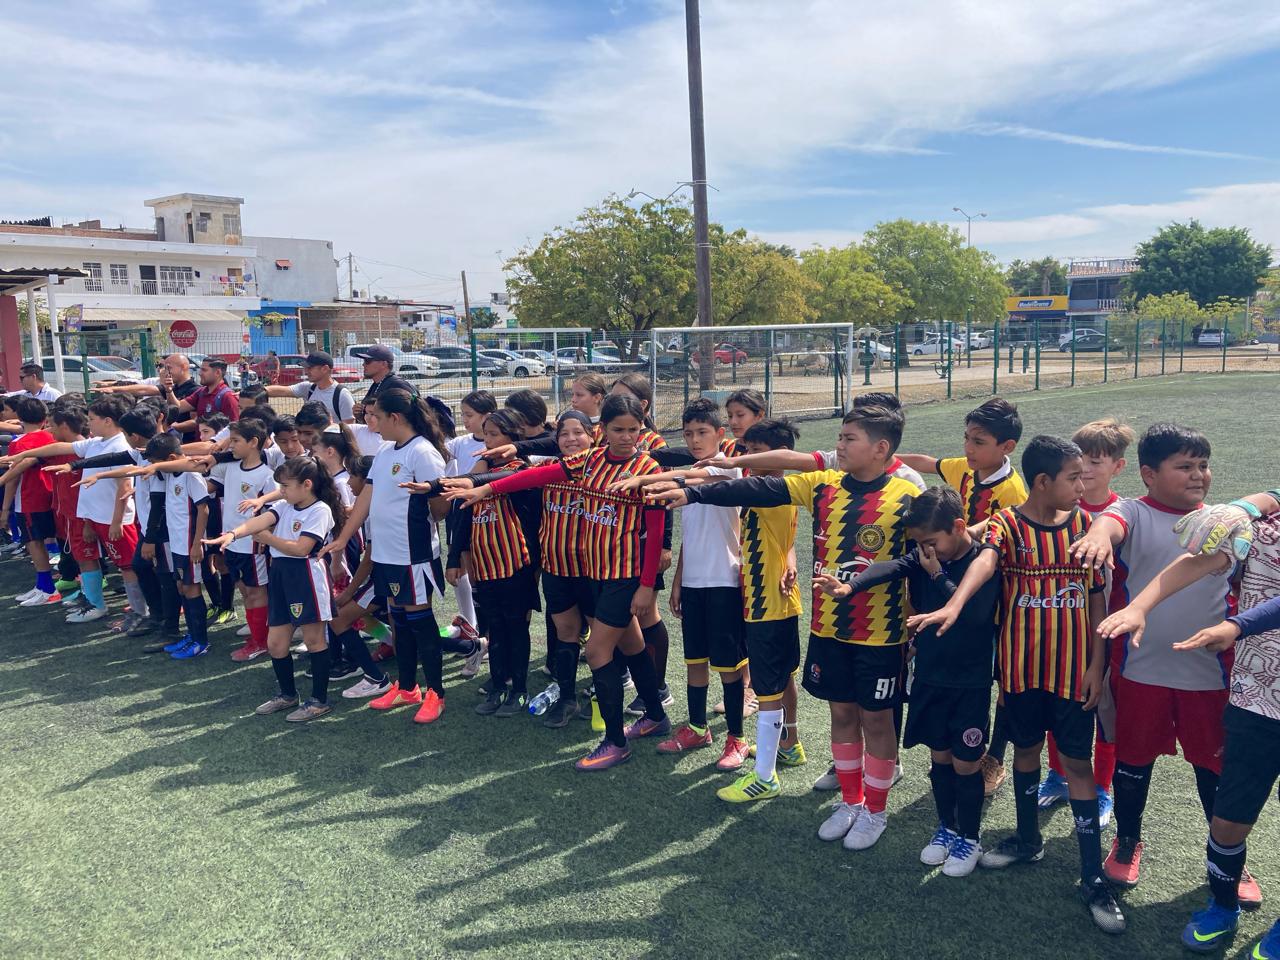 $!Inicia con 56 equipos el Futbolito Bimbo 2024 en Mazatlán